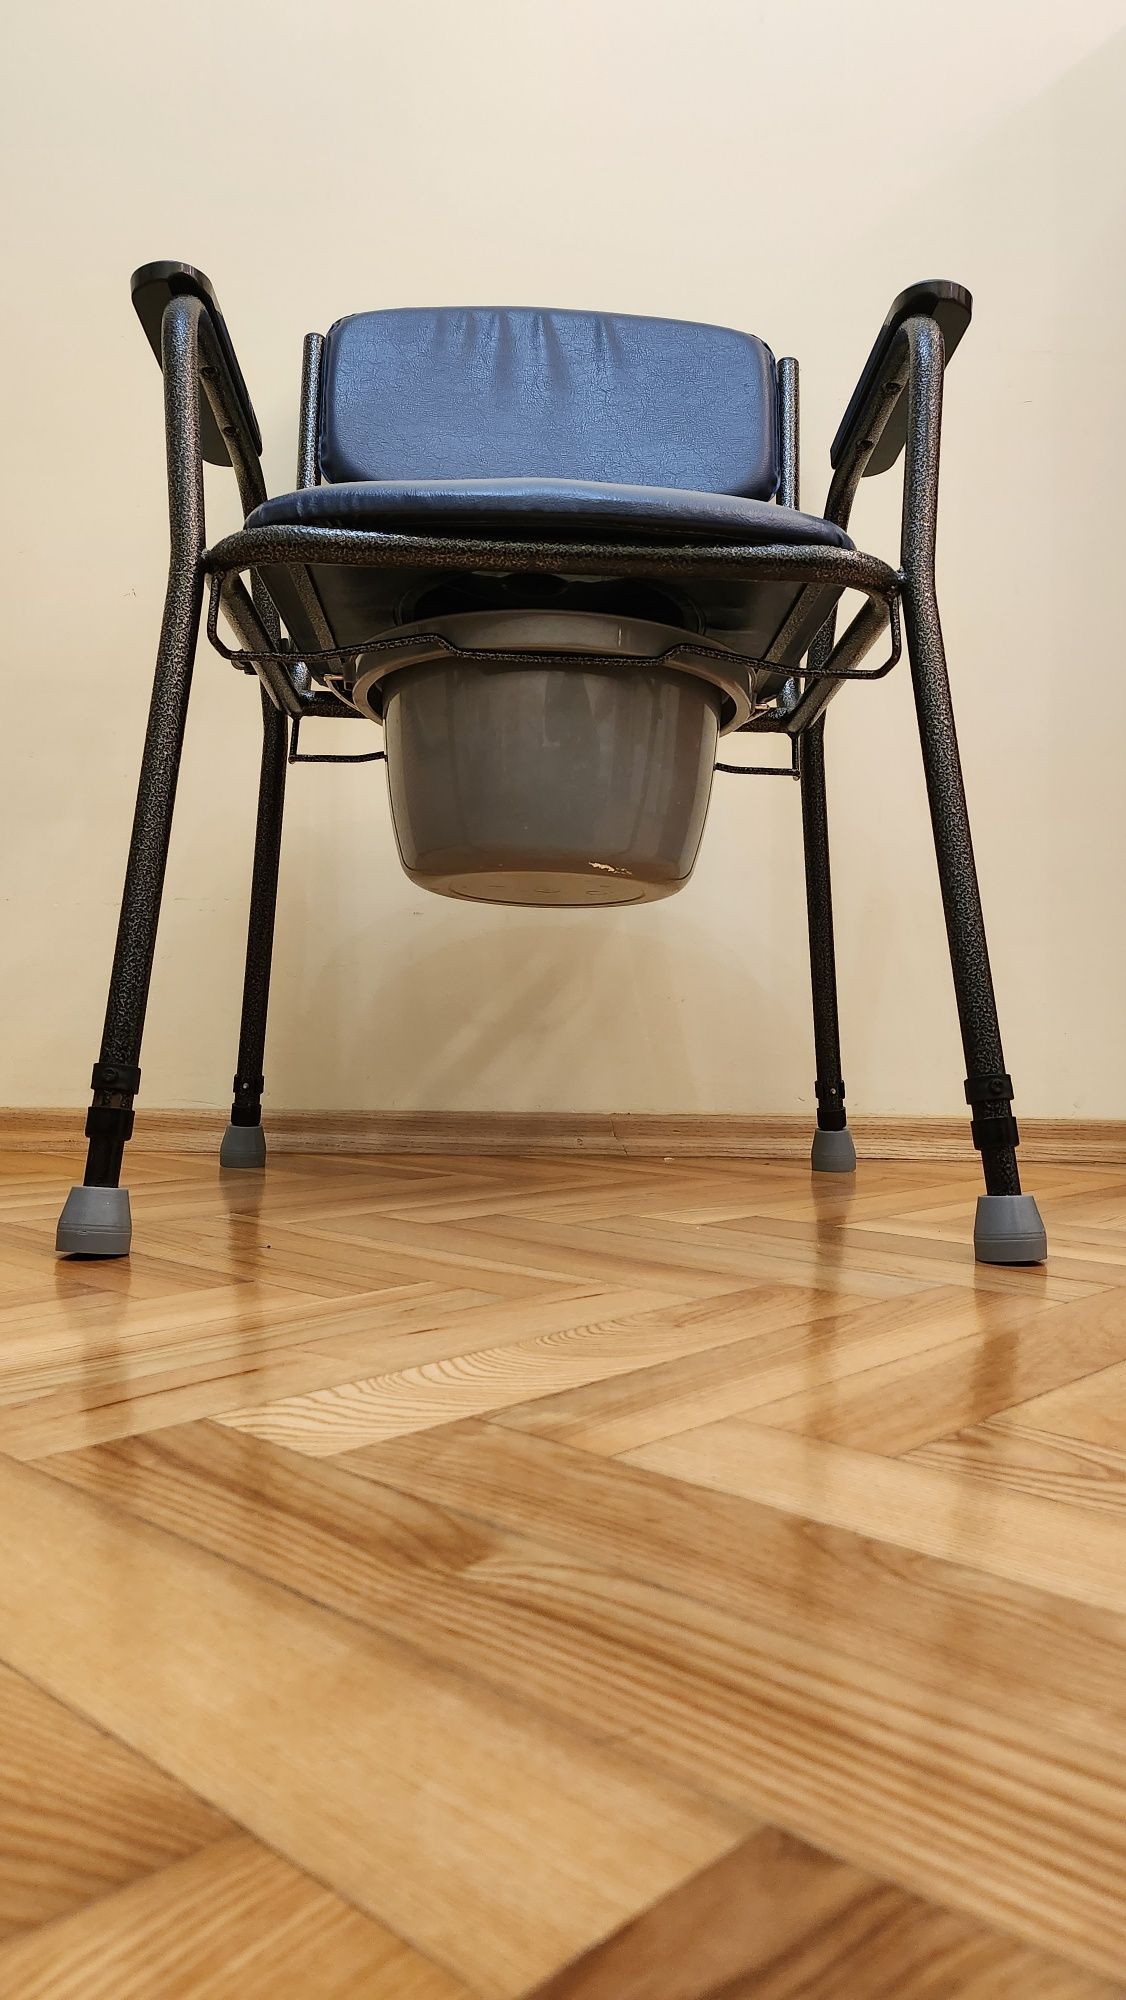 Krzesełko toalelowe rehabilitacyjne z regulowaną wysokością